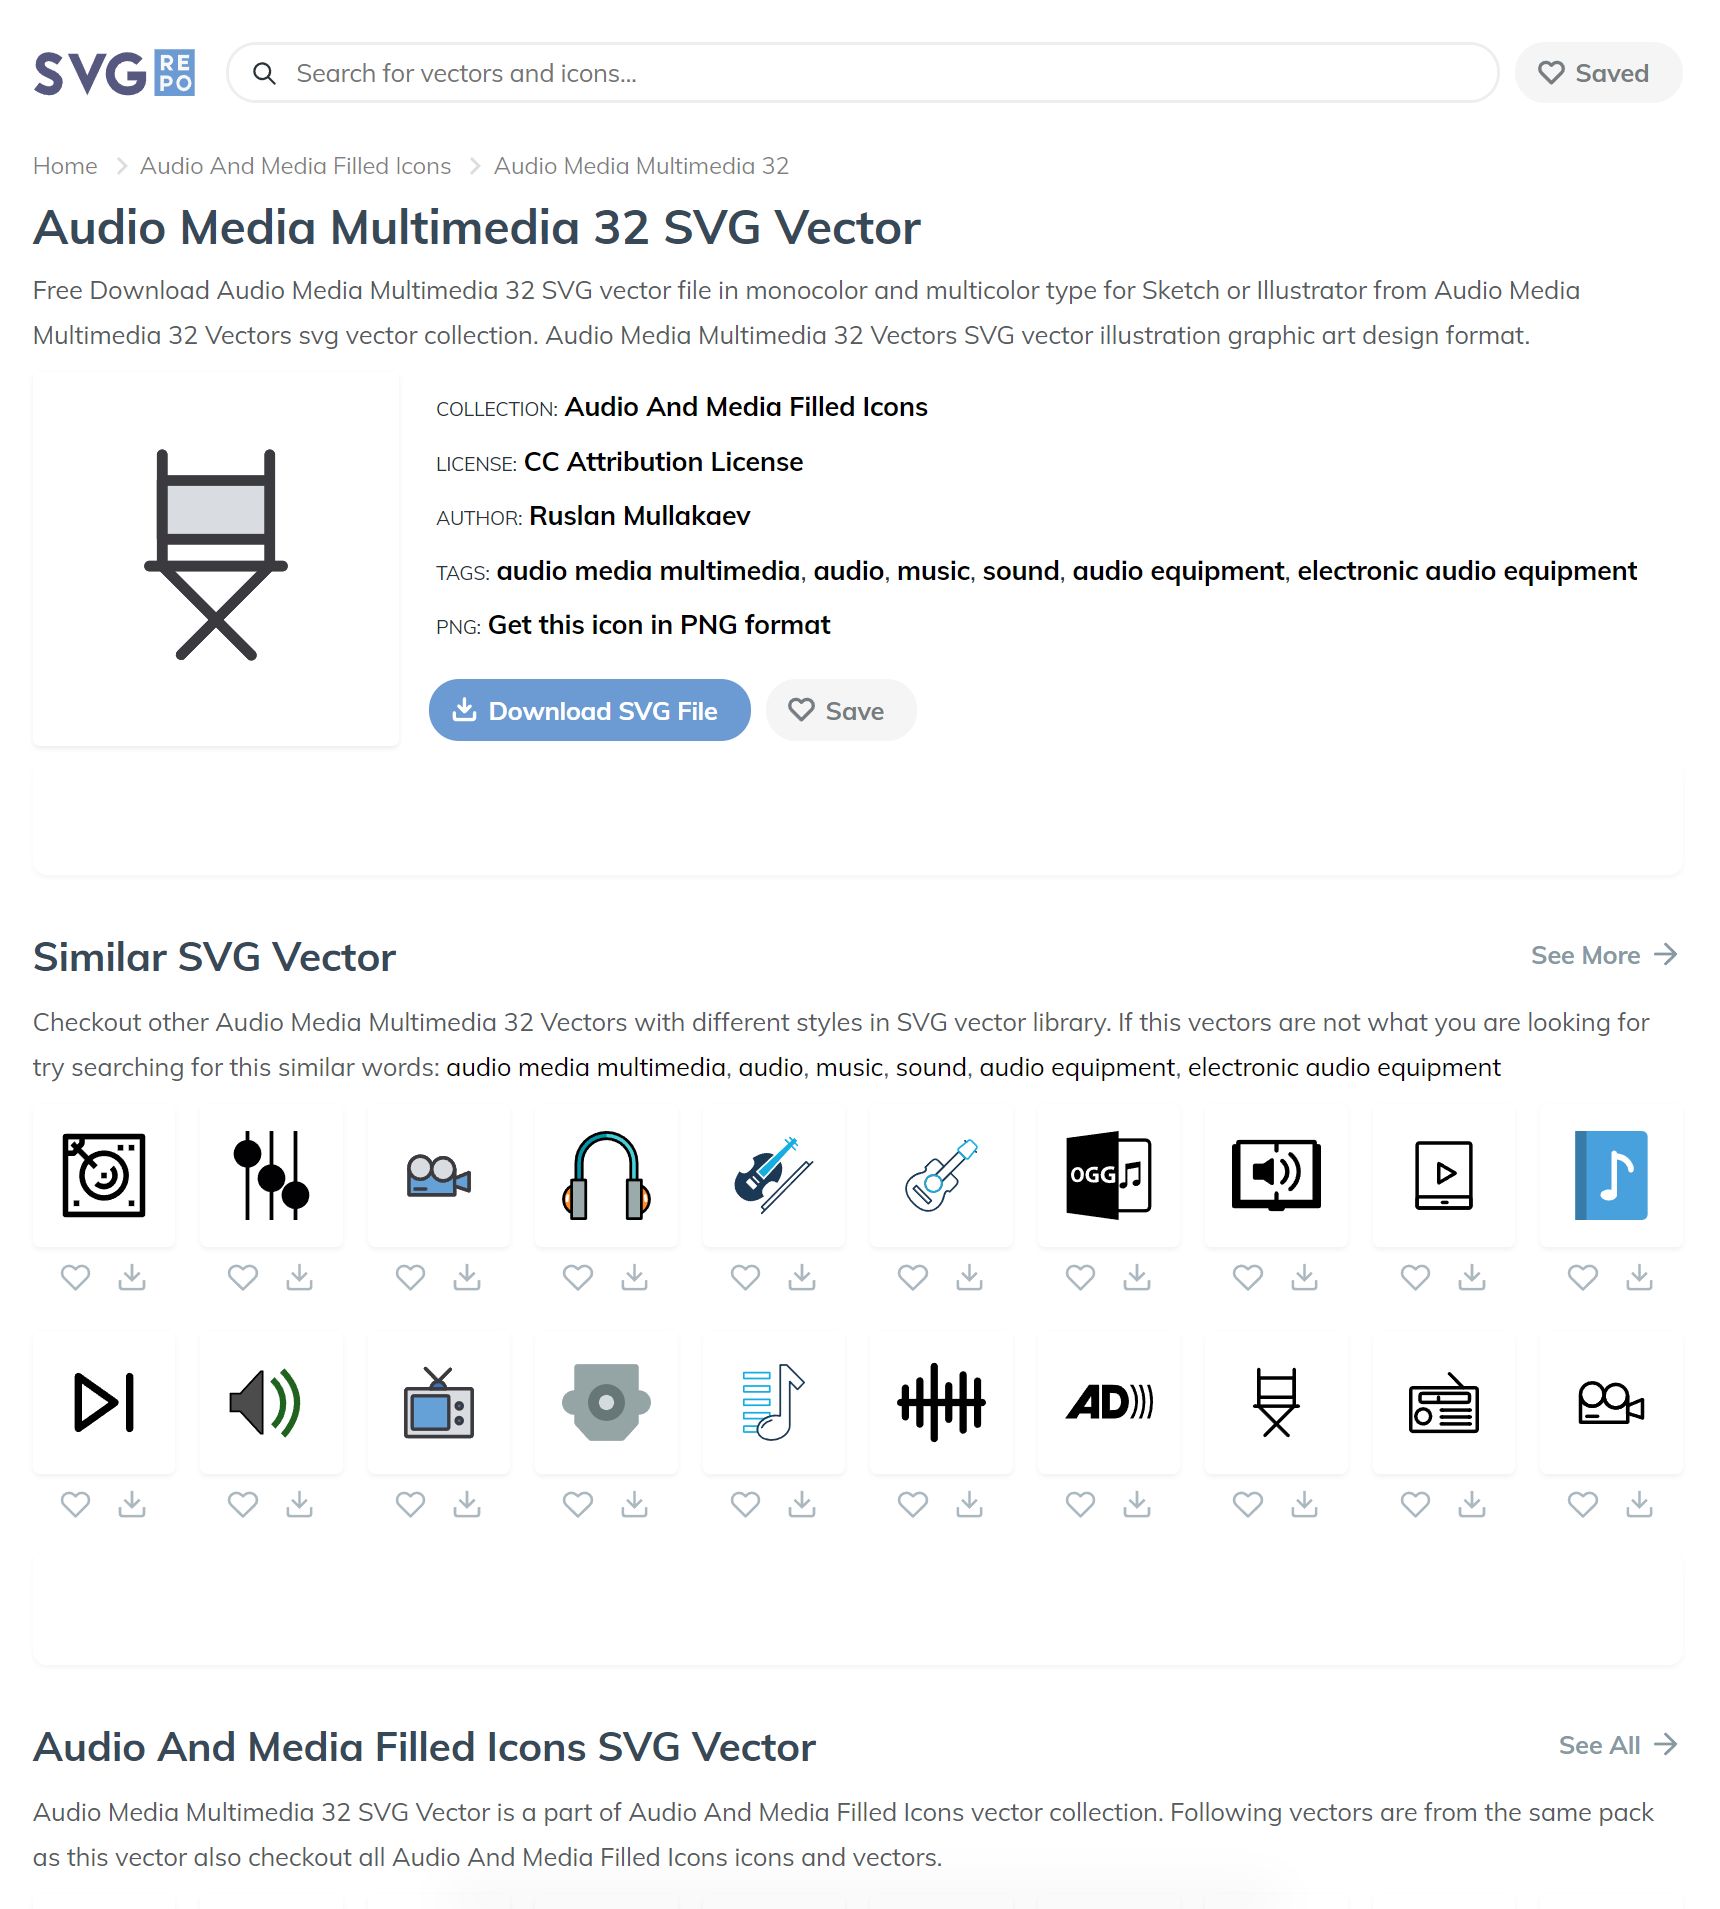 Avatar Vector SVG Icon (61) - SVG Repo